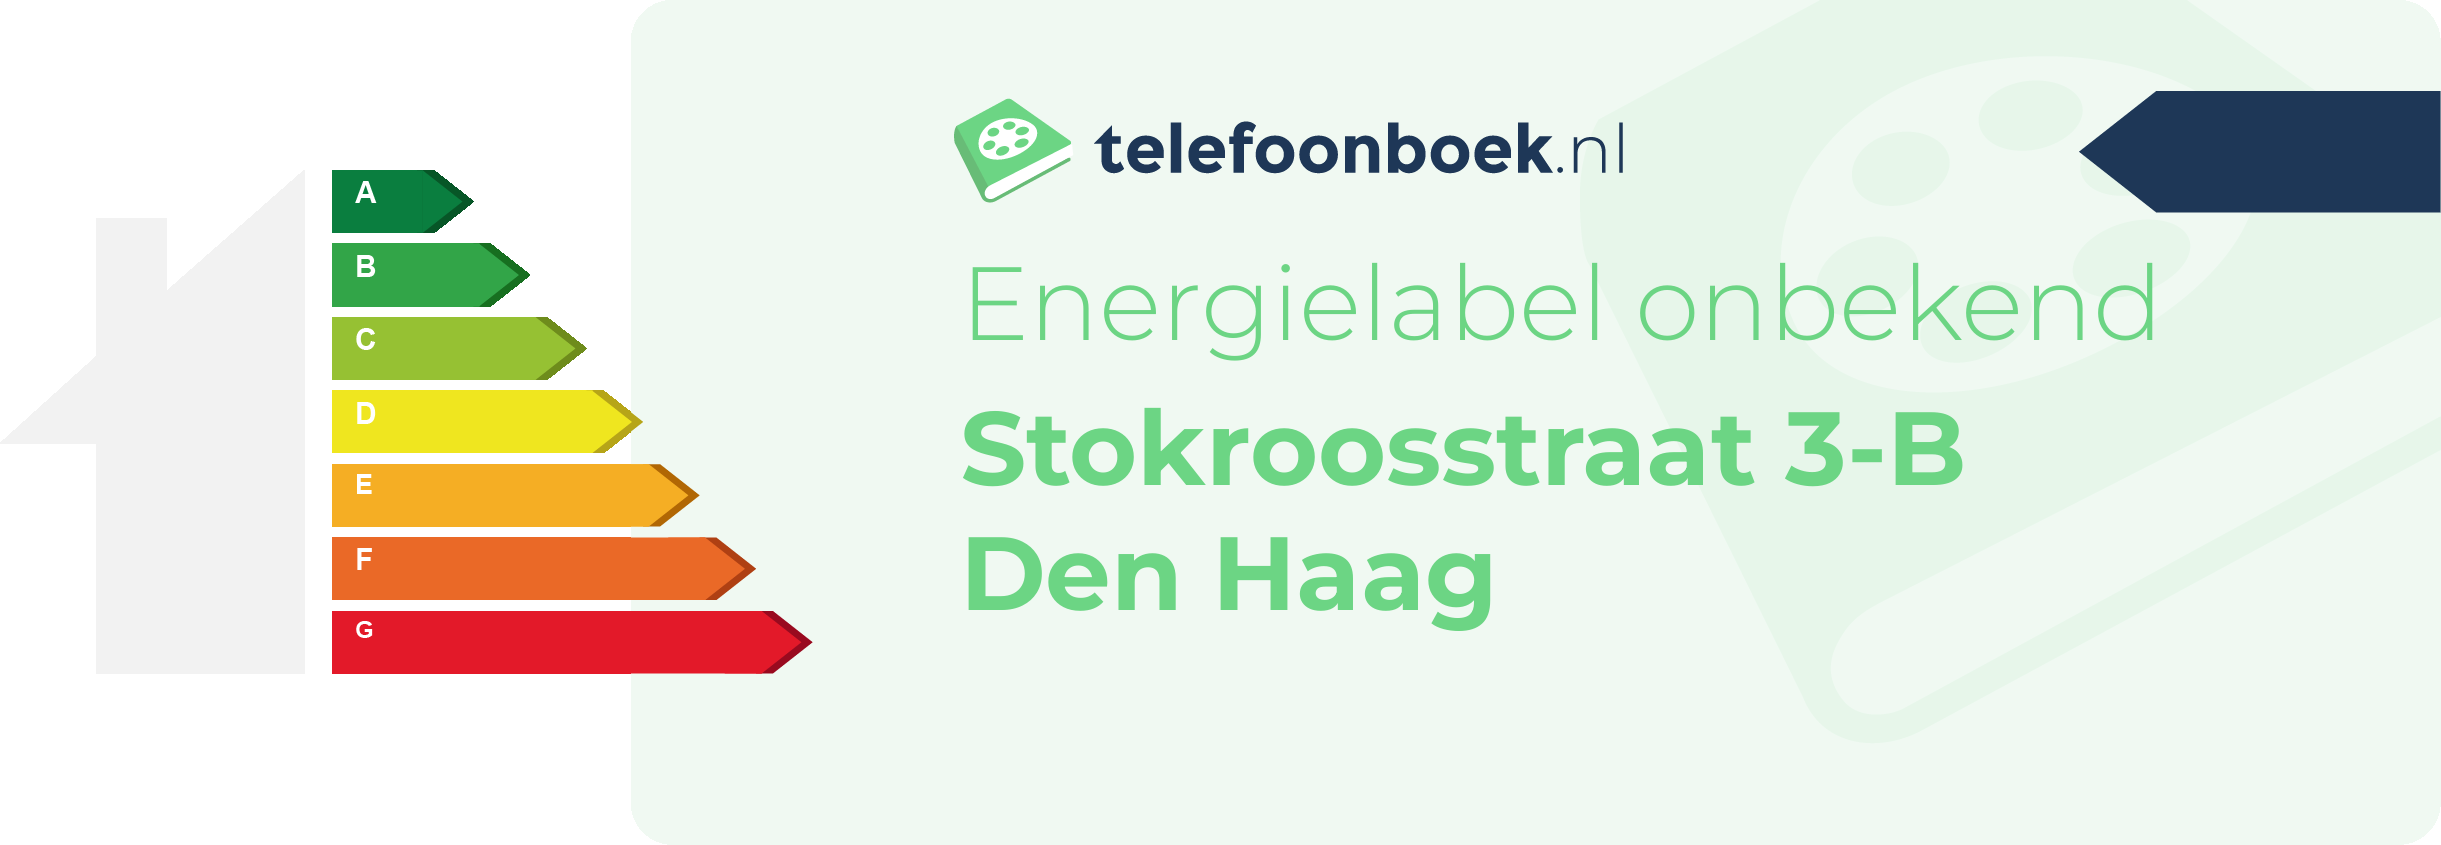 Energielabel Stokroosstraat 3-B Den Haag